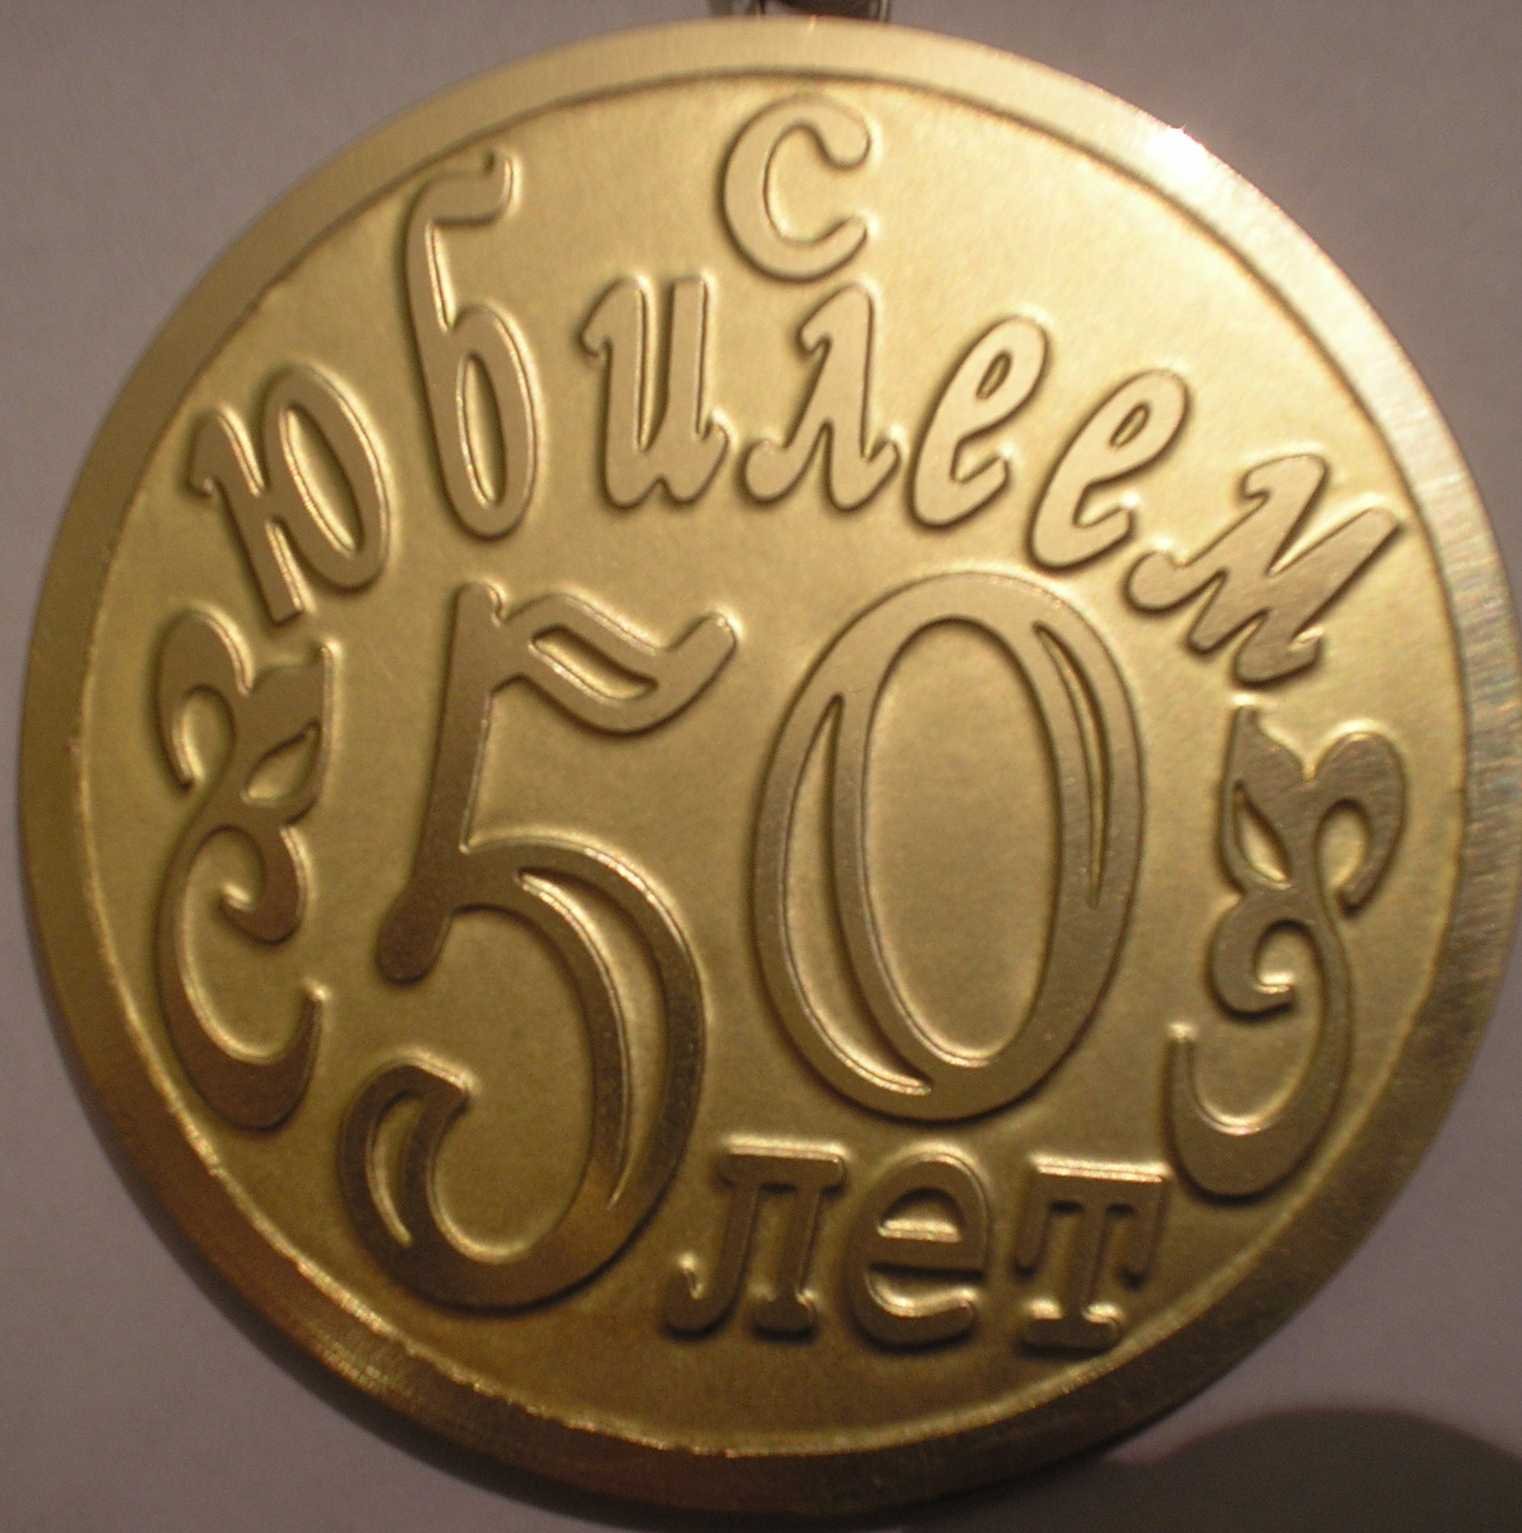 Монета на юбилей 50 лет мужчине